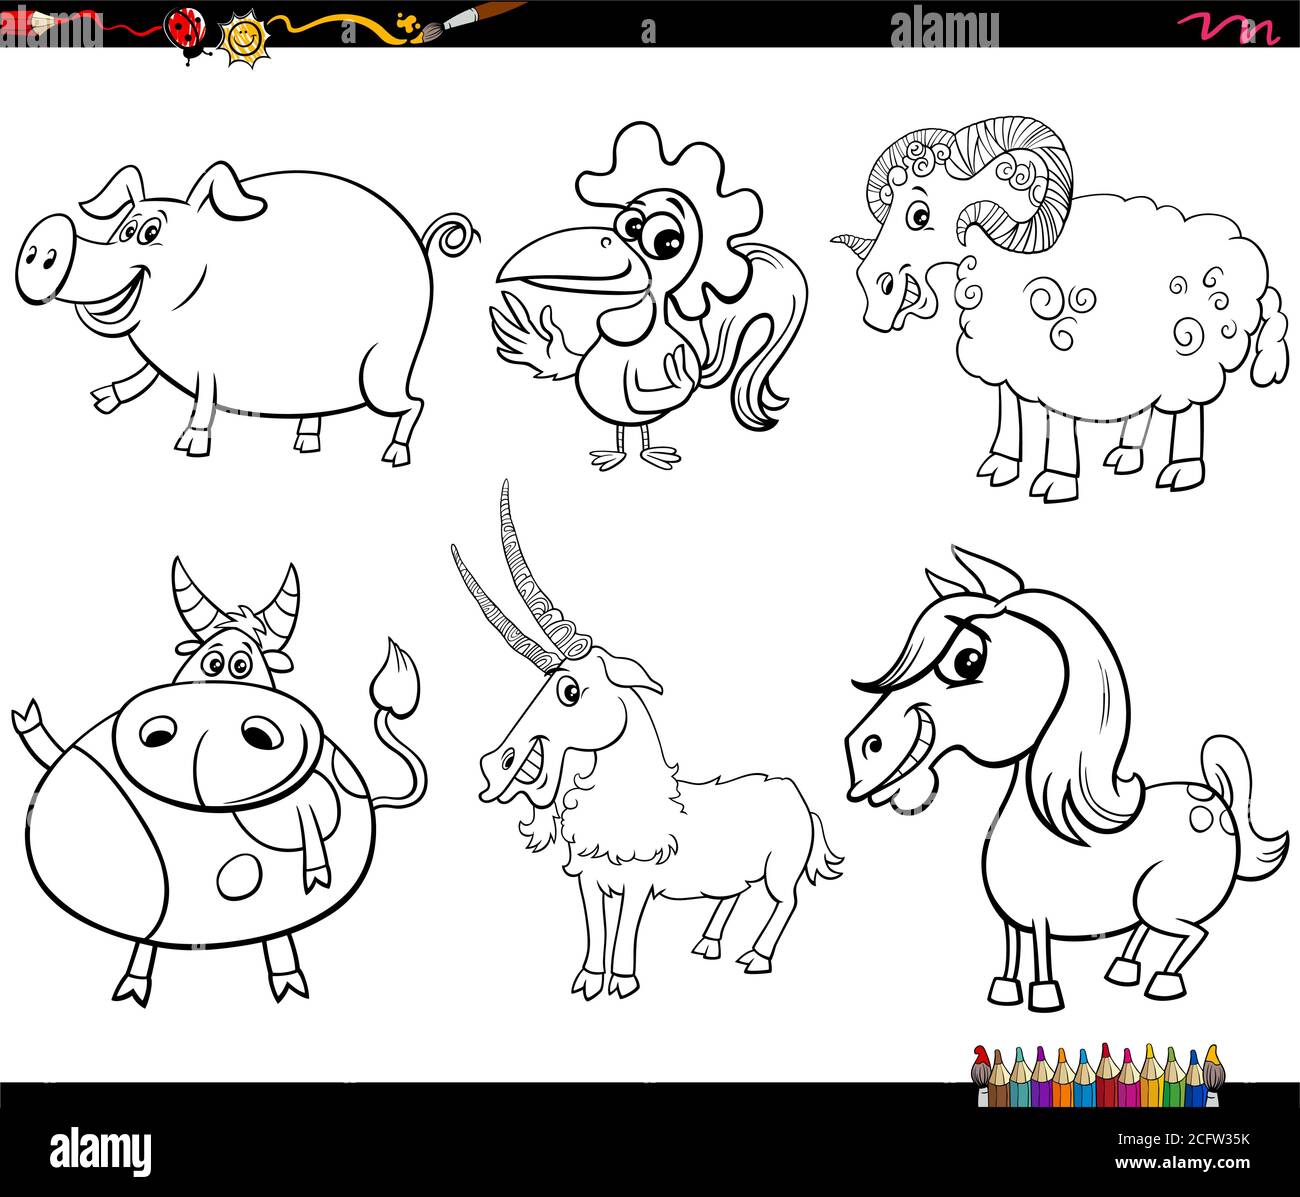 Dessin animé noir et blanc Illustration des personnages Happy Farm Animal Définir la page du livre de coloriage Illustration de Vecteur